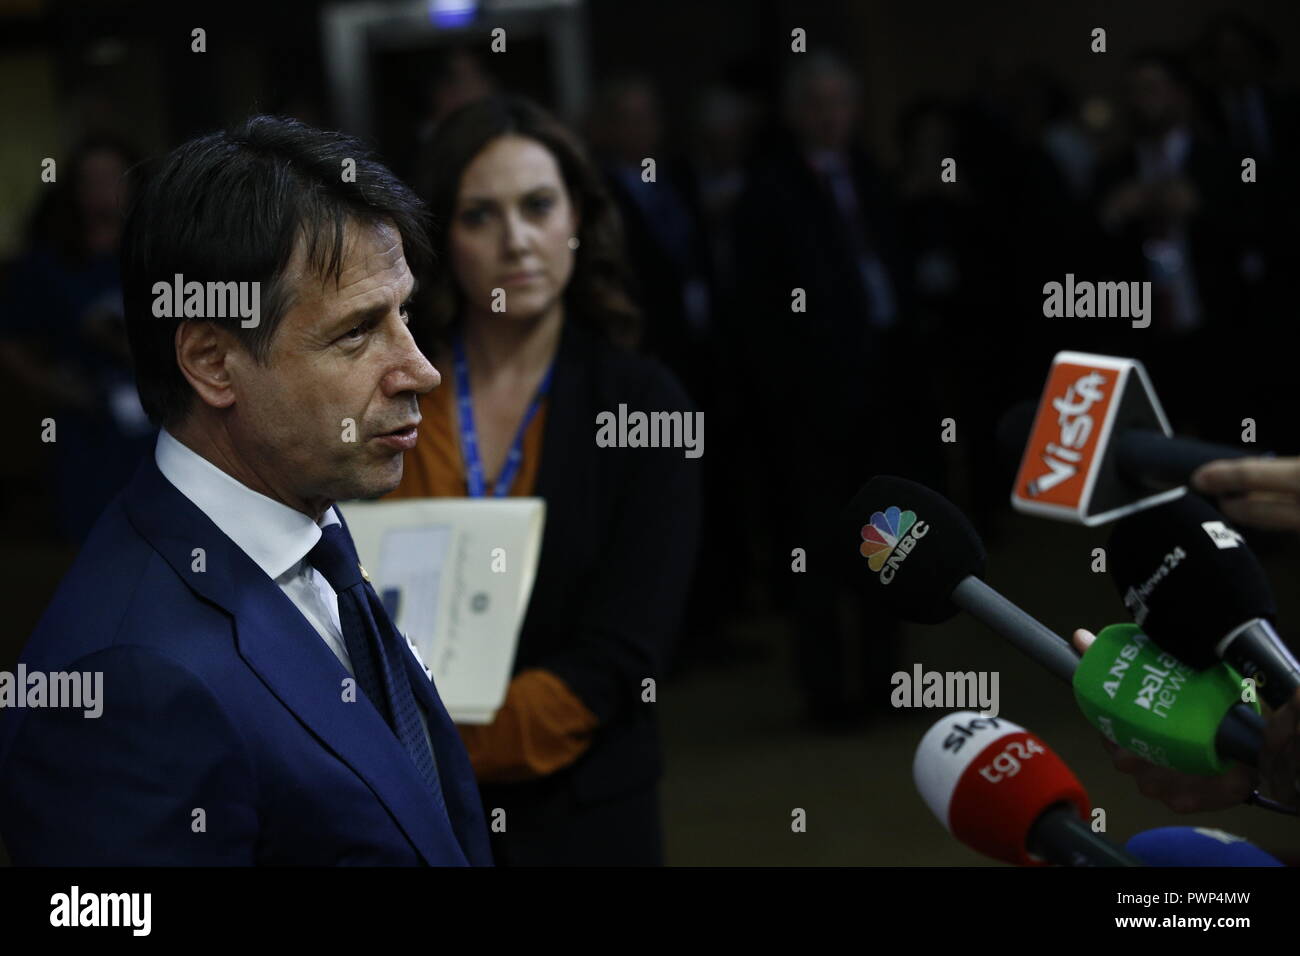 Bruxelles, Belgio. 17 ott 2018 . Primo Ministro italiano Giuseppe Conte arriva per un incontro con i dirigenti dell'Unione europea. Alexandros Michailidis/Alamy Live News Foto Stock